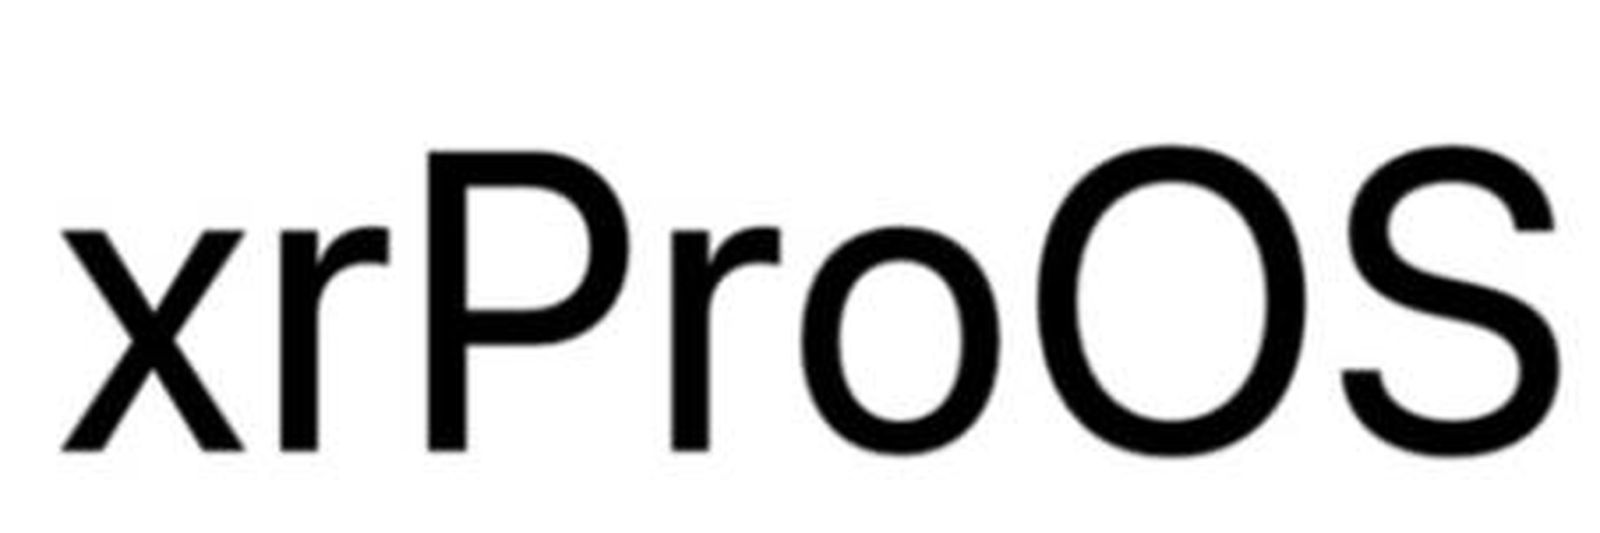 Apple ha registrato il marchio xrProOS